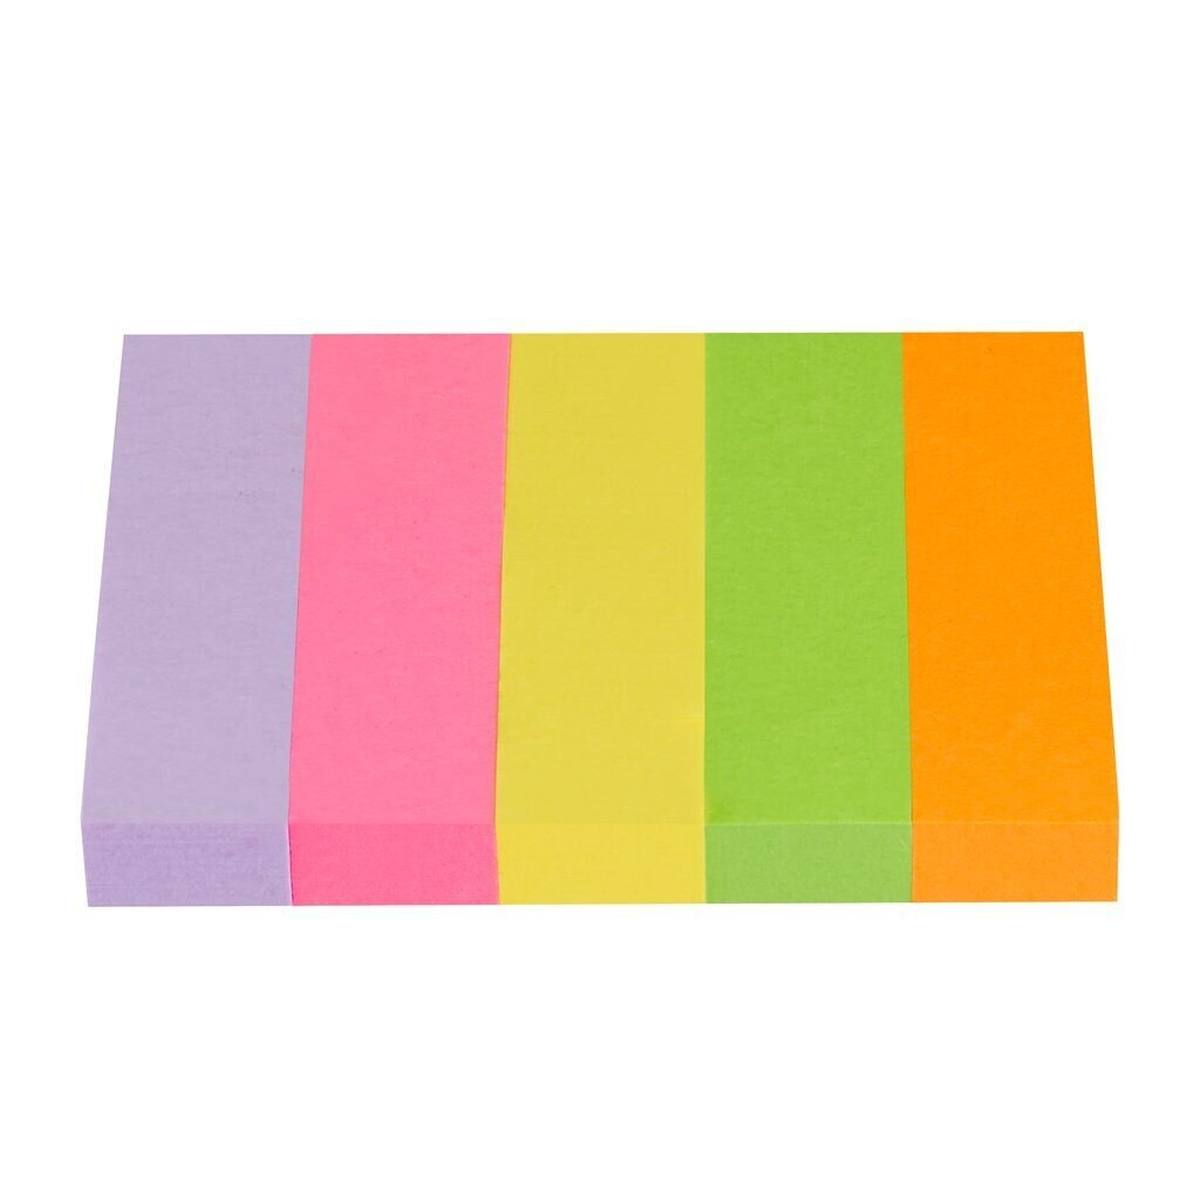 3M Post-it Segnapagina 670-5, 15 mm x 50 mm, giallo neon, verde neon, arancione neon, rosa neon, viola, 5 x 100 fogli